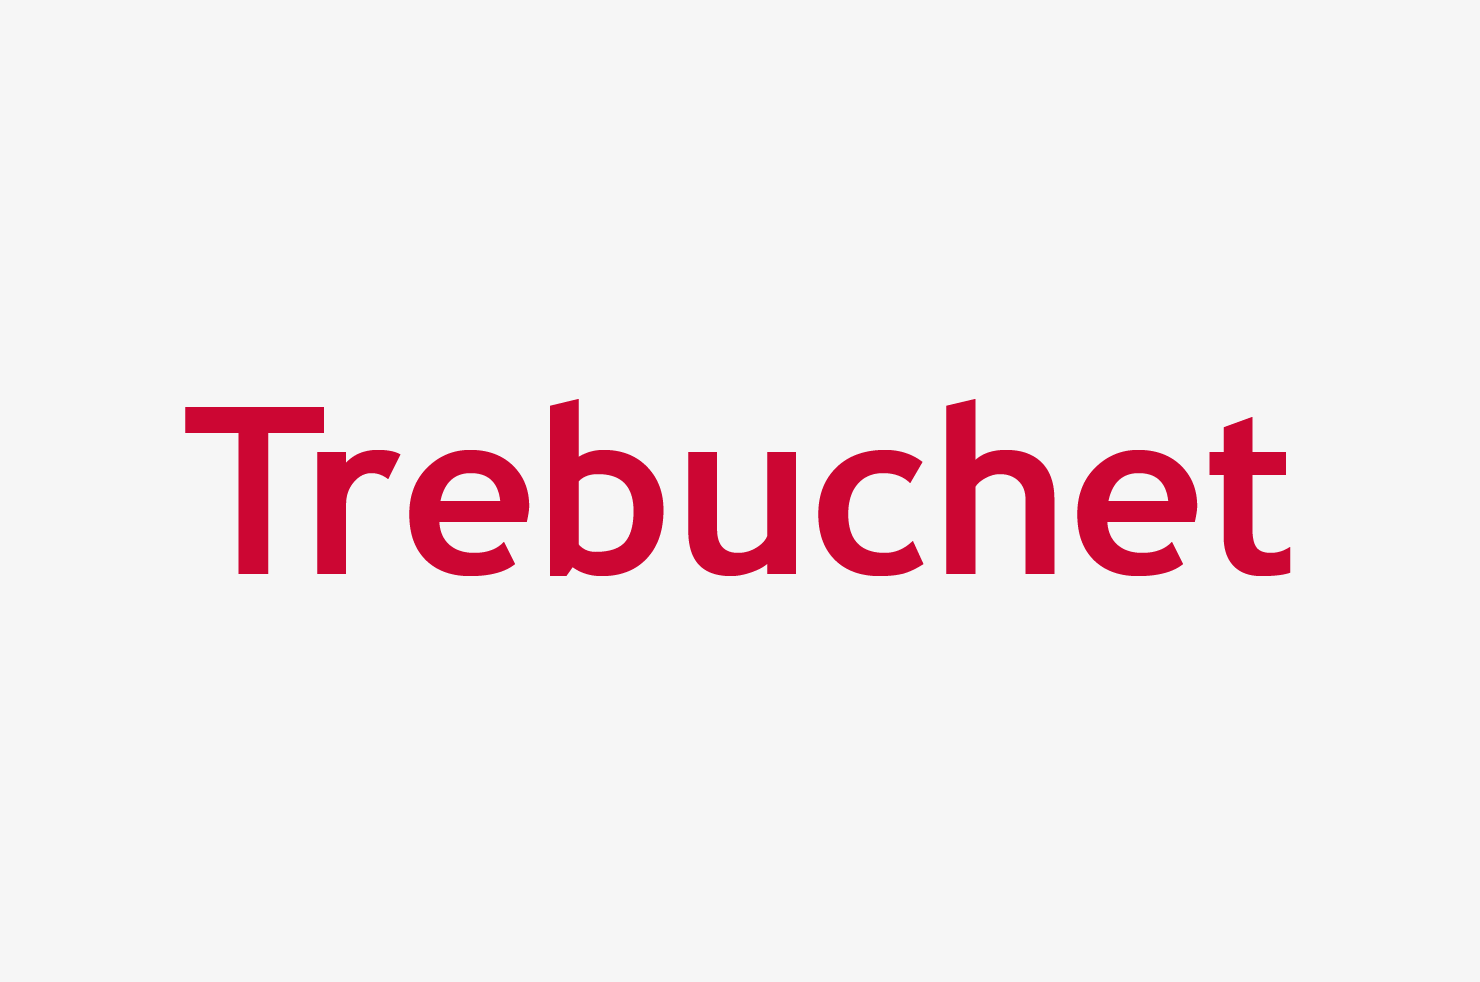 Typeface box Trebuchet